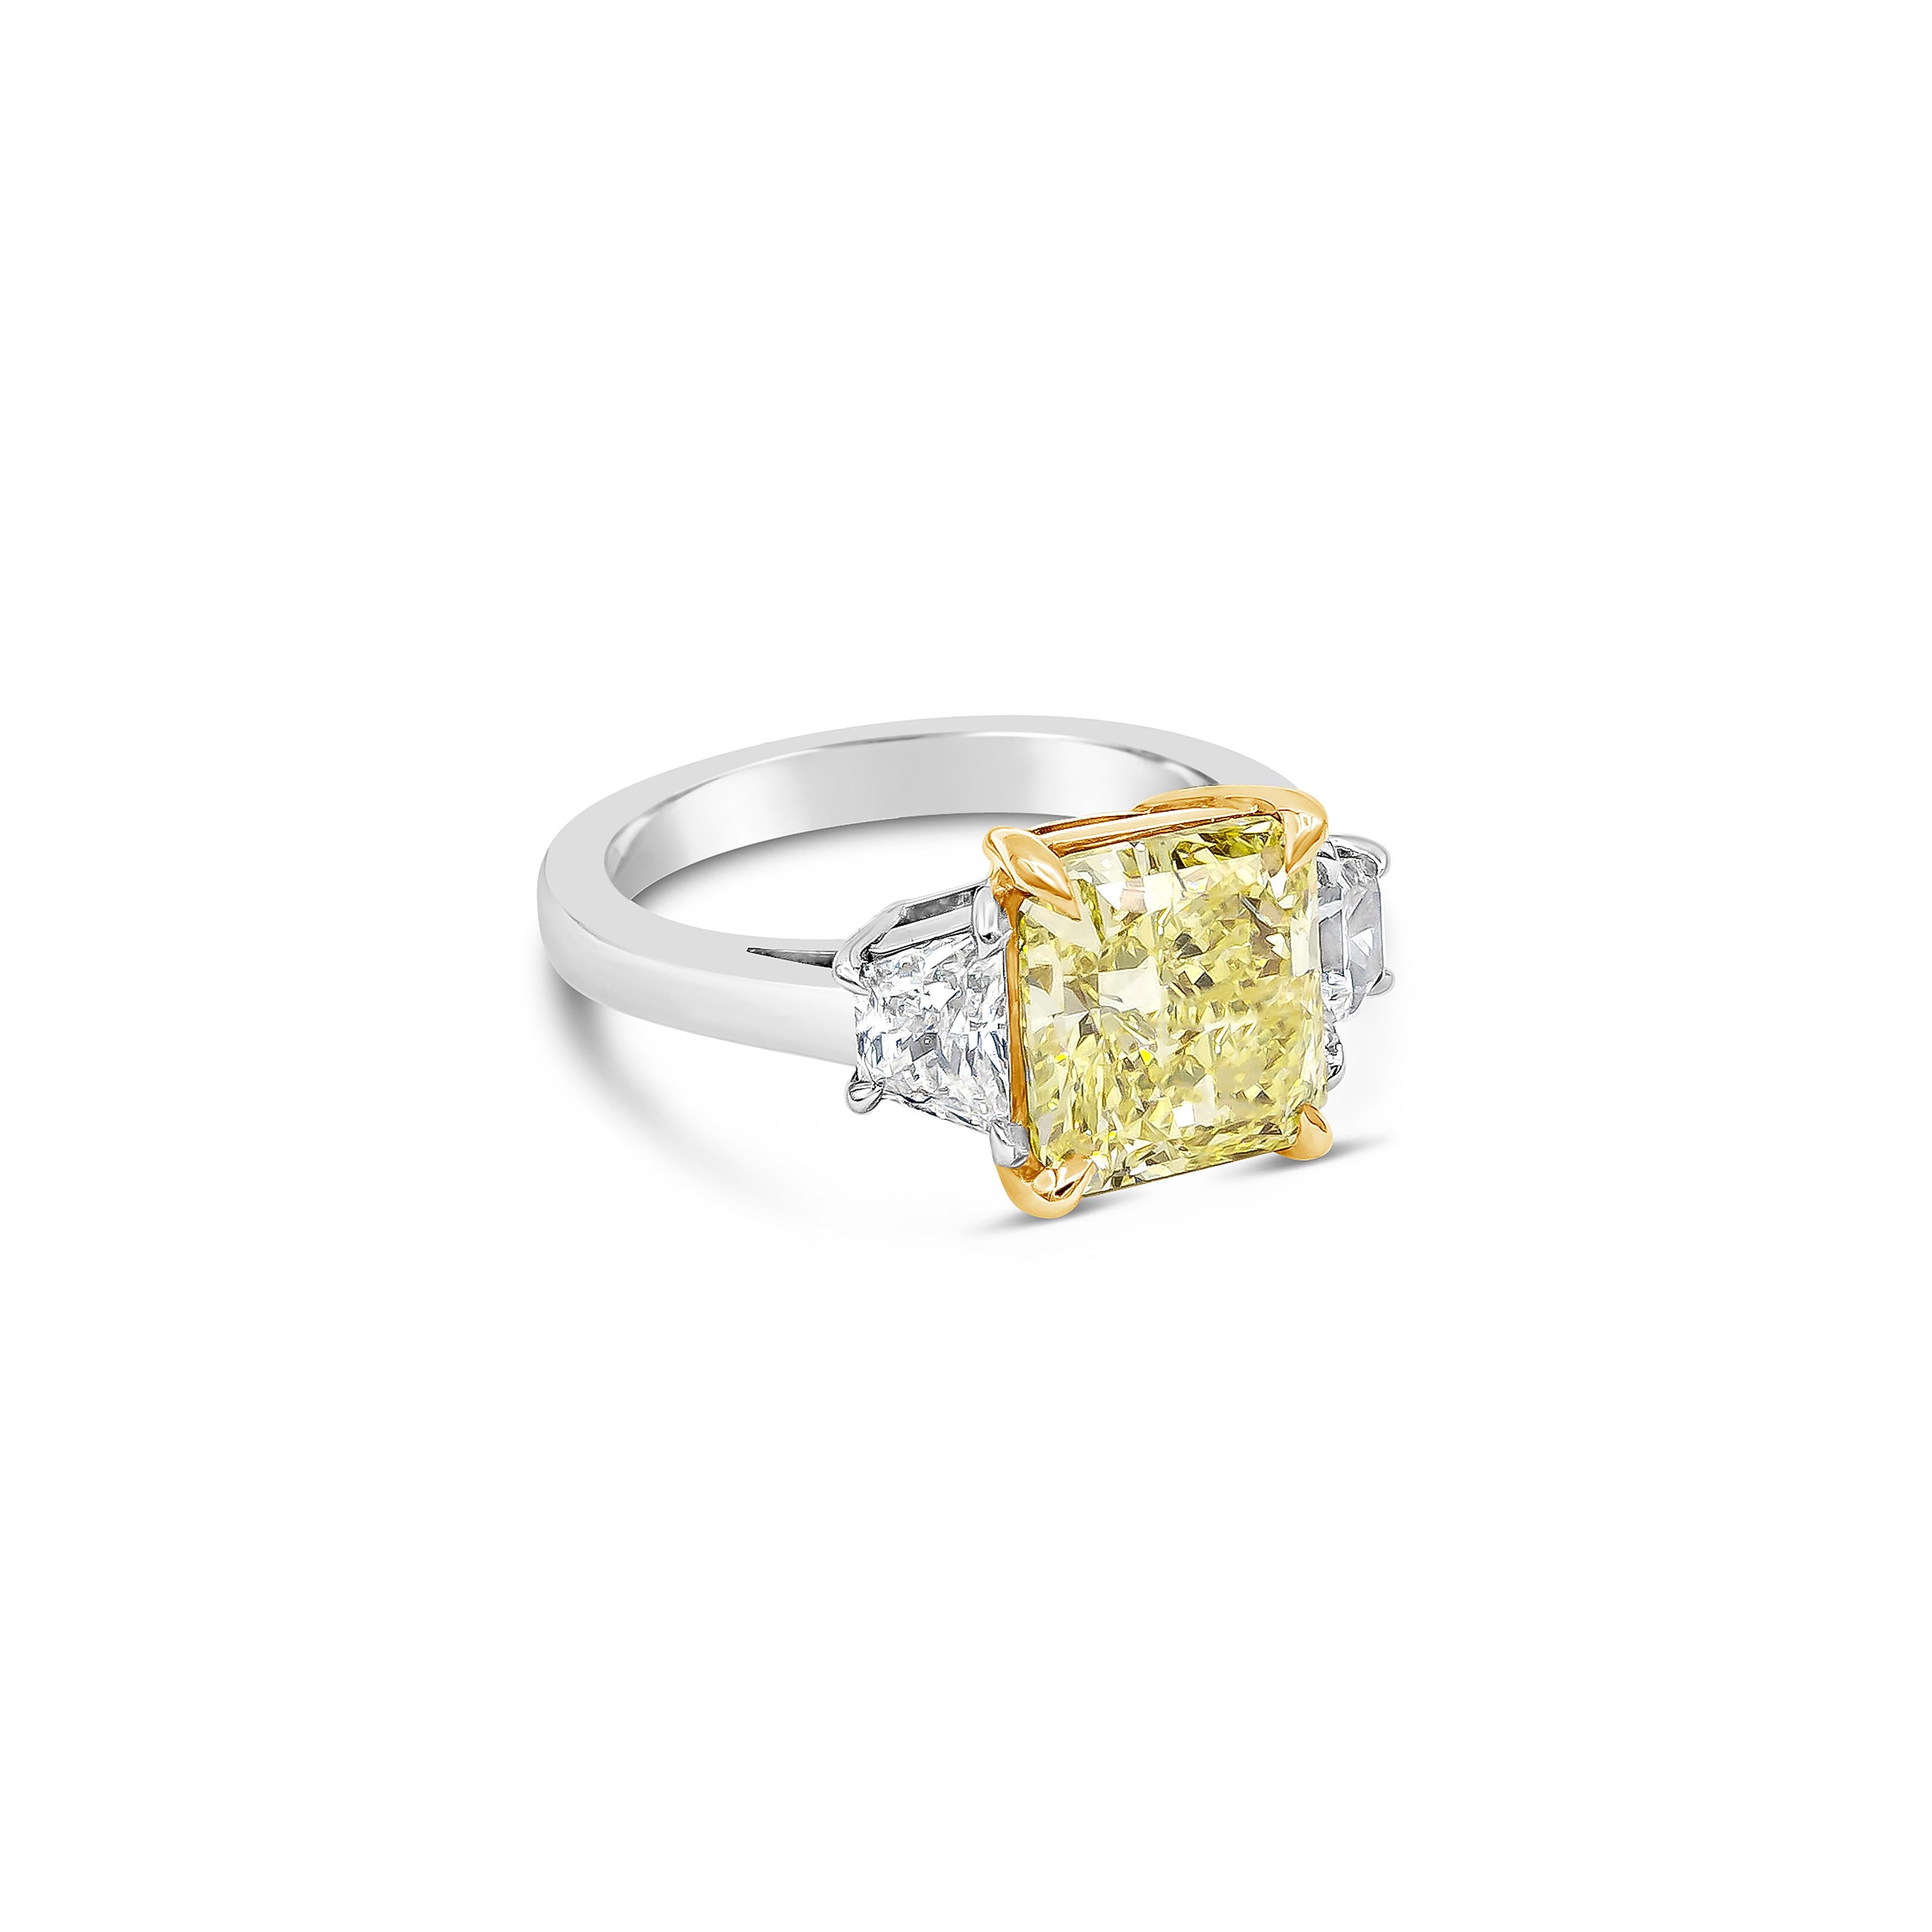 Verfügt über einen 3,31 Karat strahlend geschliffenen Diamanten, dass GIA zertifiziert als Fancy Yellow Farbe, VVS2 in Klarheit, in einem 18k Gelbgold vier Zacken Korb Einstellung. Elegant flankiert von zwei trapezförmigen Diamanten in einer